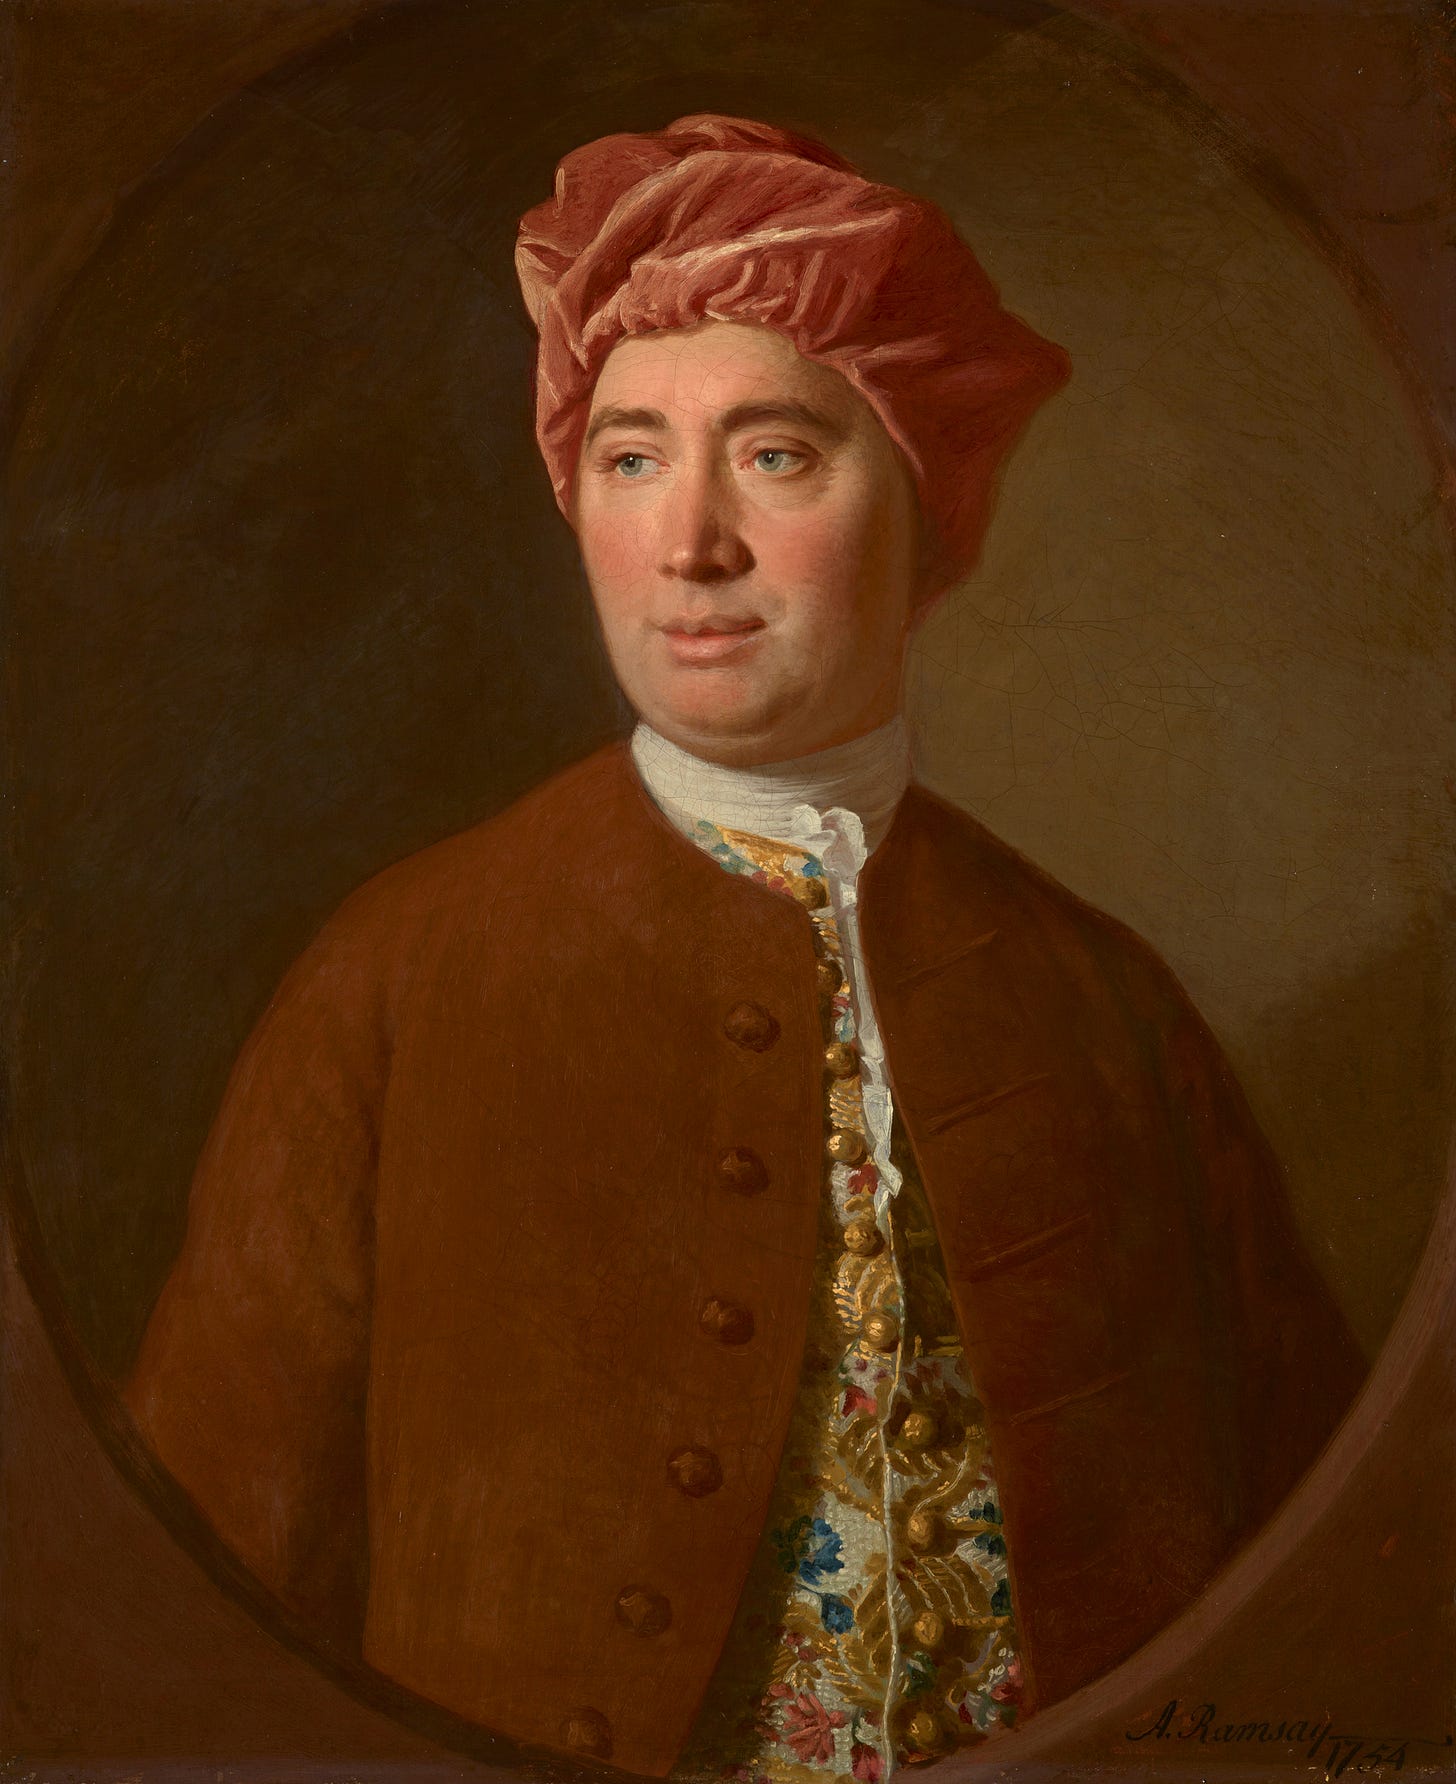 David Hume - Wikipedia